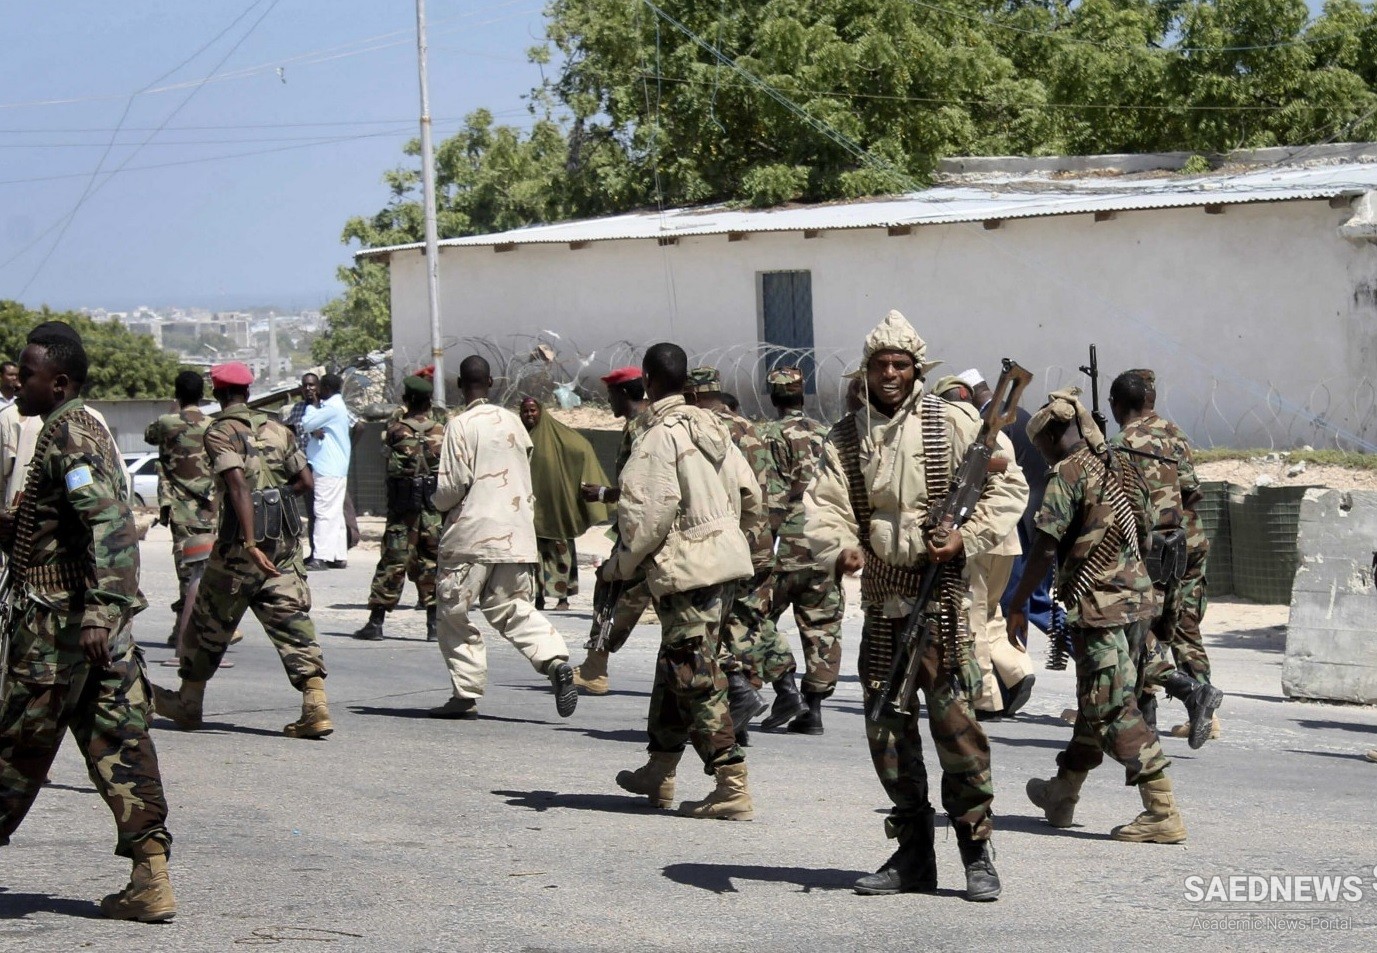 सोमाली में आत्मघाती हमला दर्जनों मारे गए